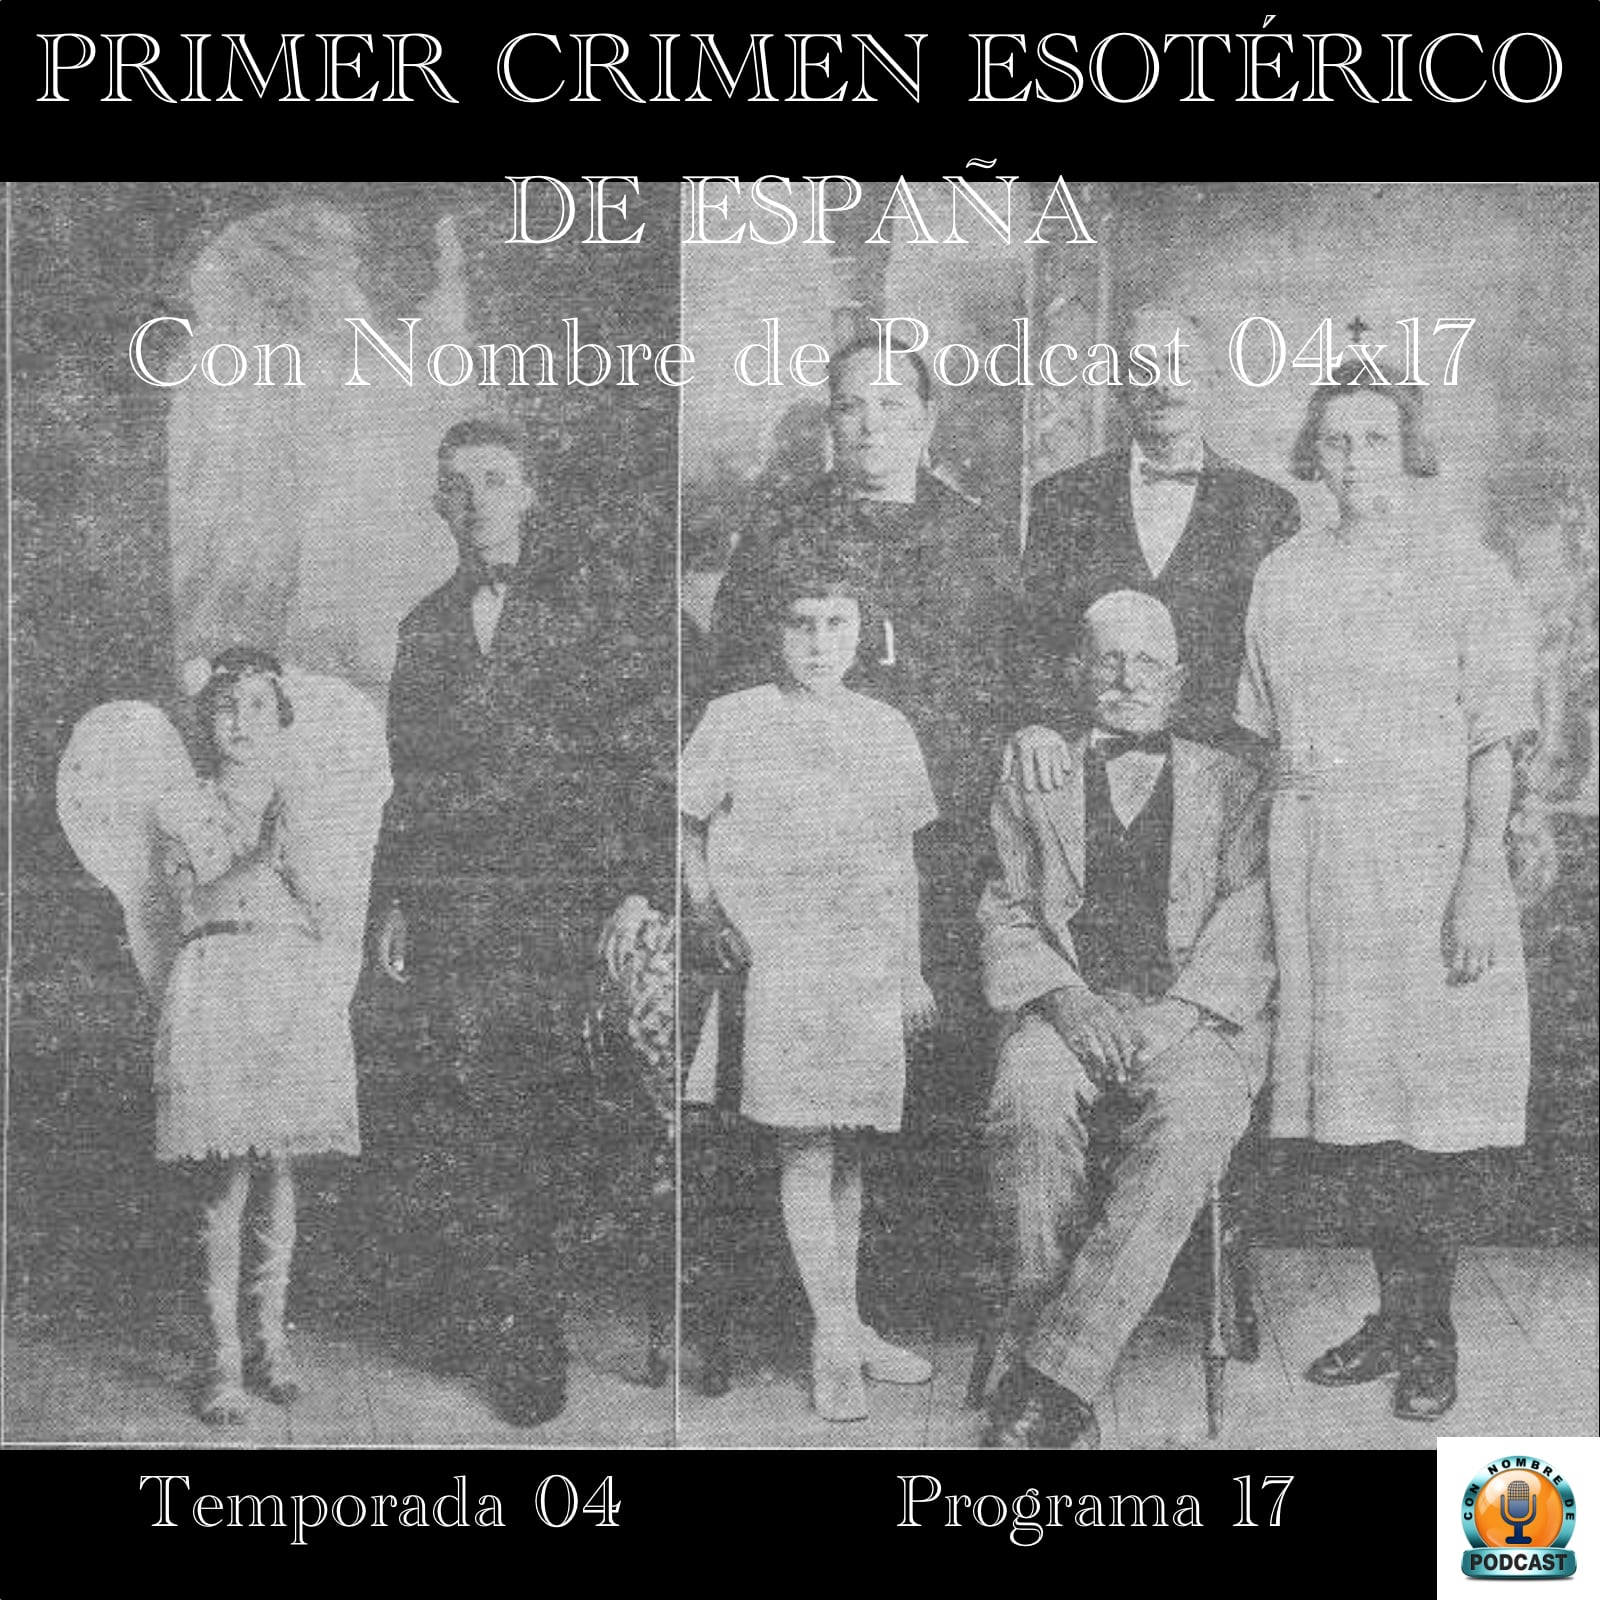 Primer crimen esotérico de españa | con nombre de podcast 04x17 | luisbermejo. Com